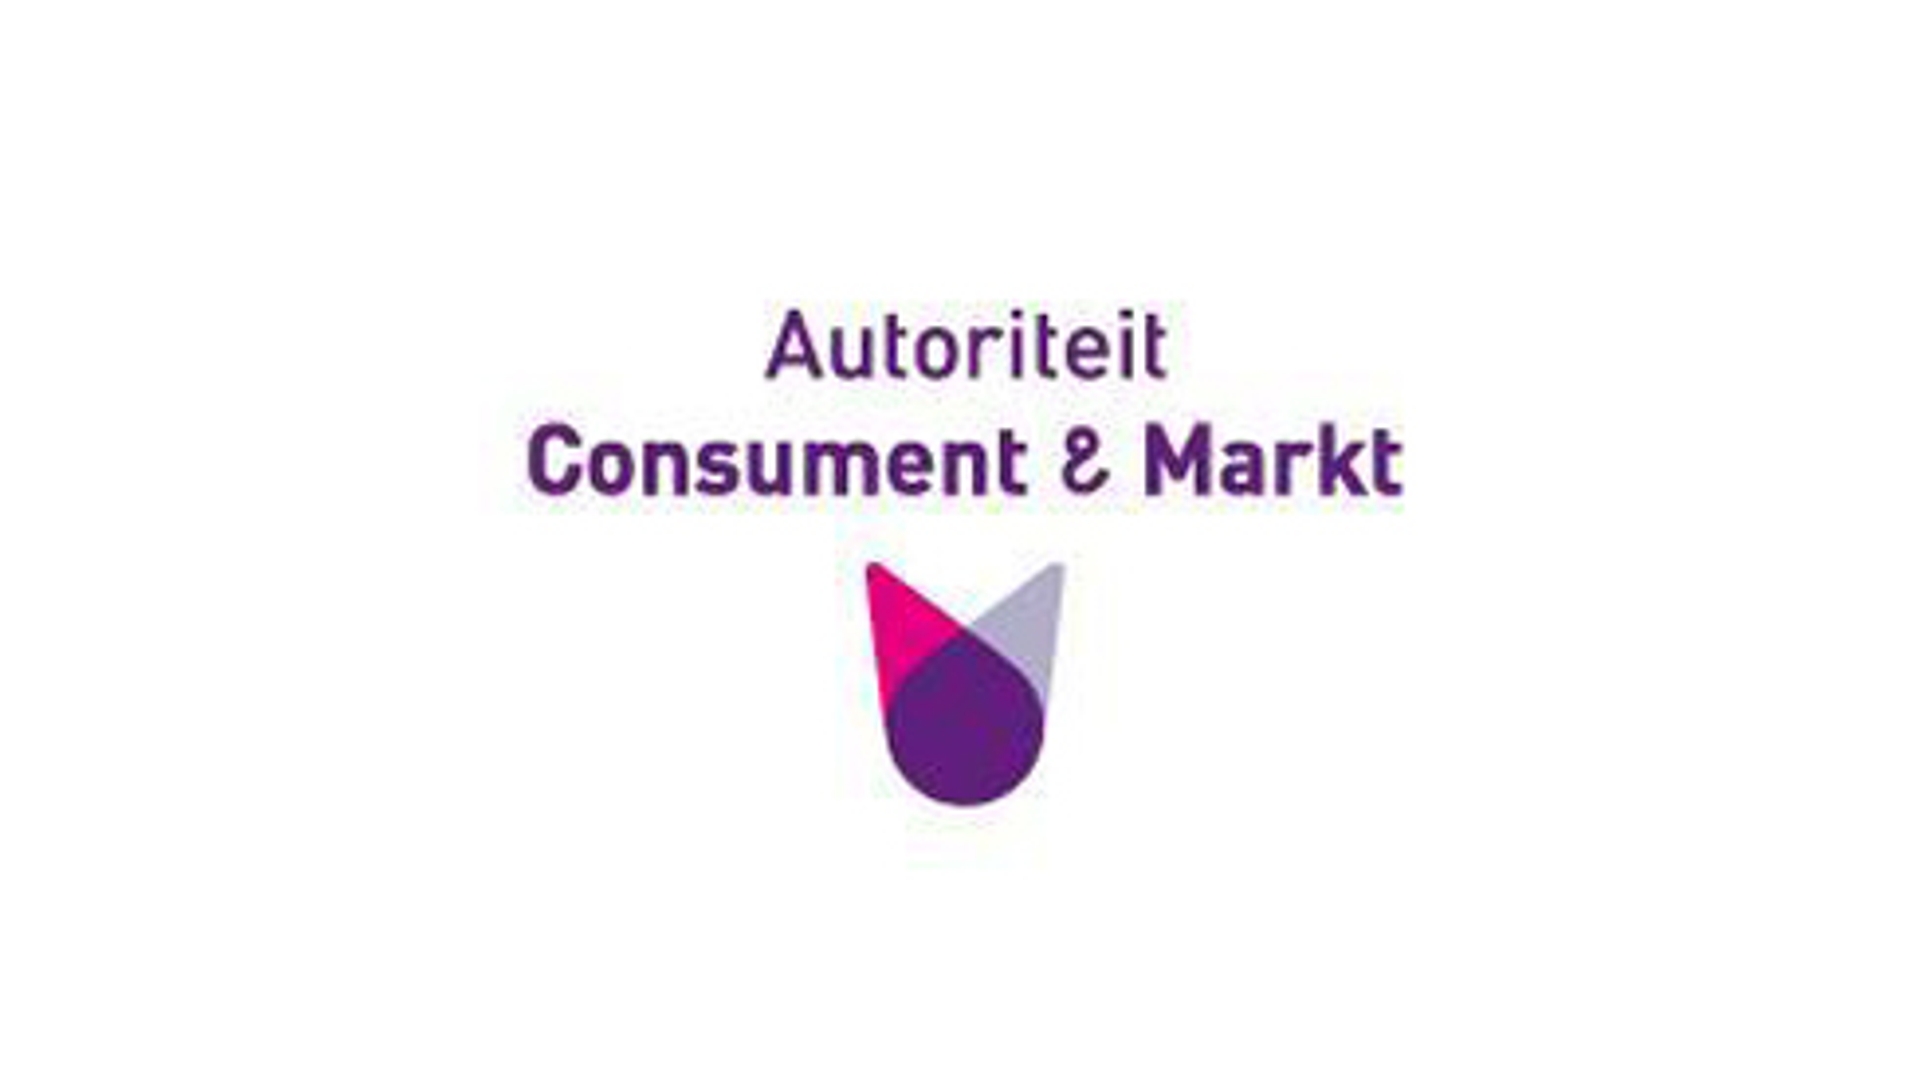 Autoriteit_Consument_en_Markt_05.jpg